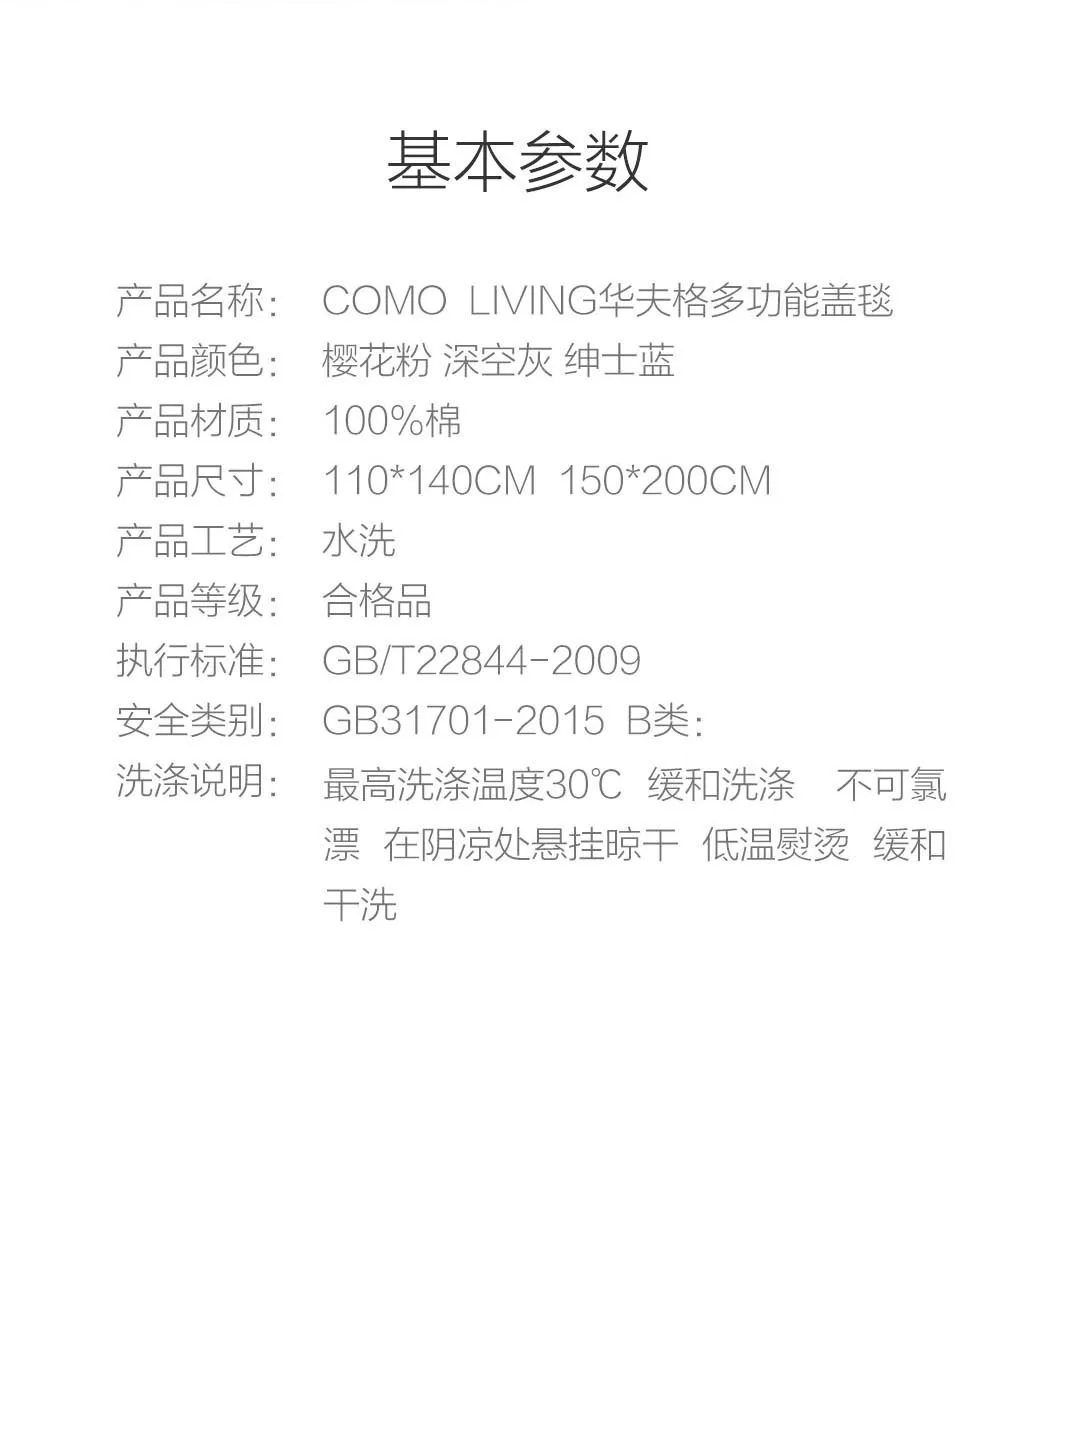 Xiaomi COMO живое вафельное хлопковое многофункциональное покрывало из хлопка для окрашивания растений классическое вафельное одеяло для кондиционирования воздуха Mijia